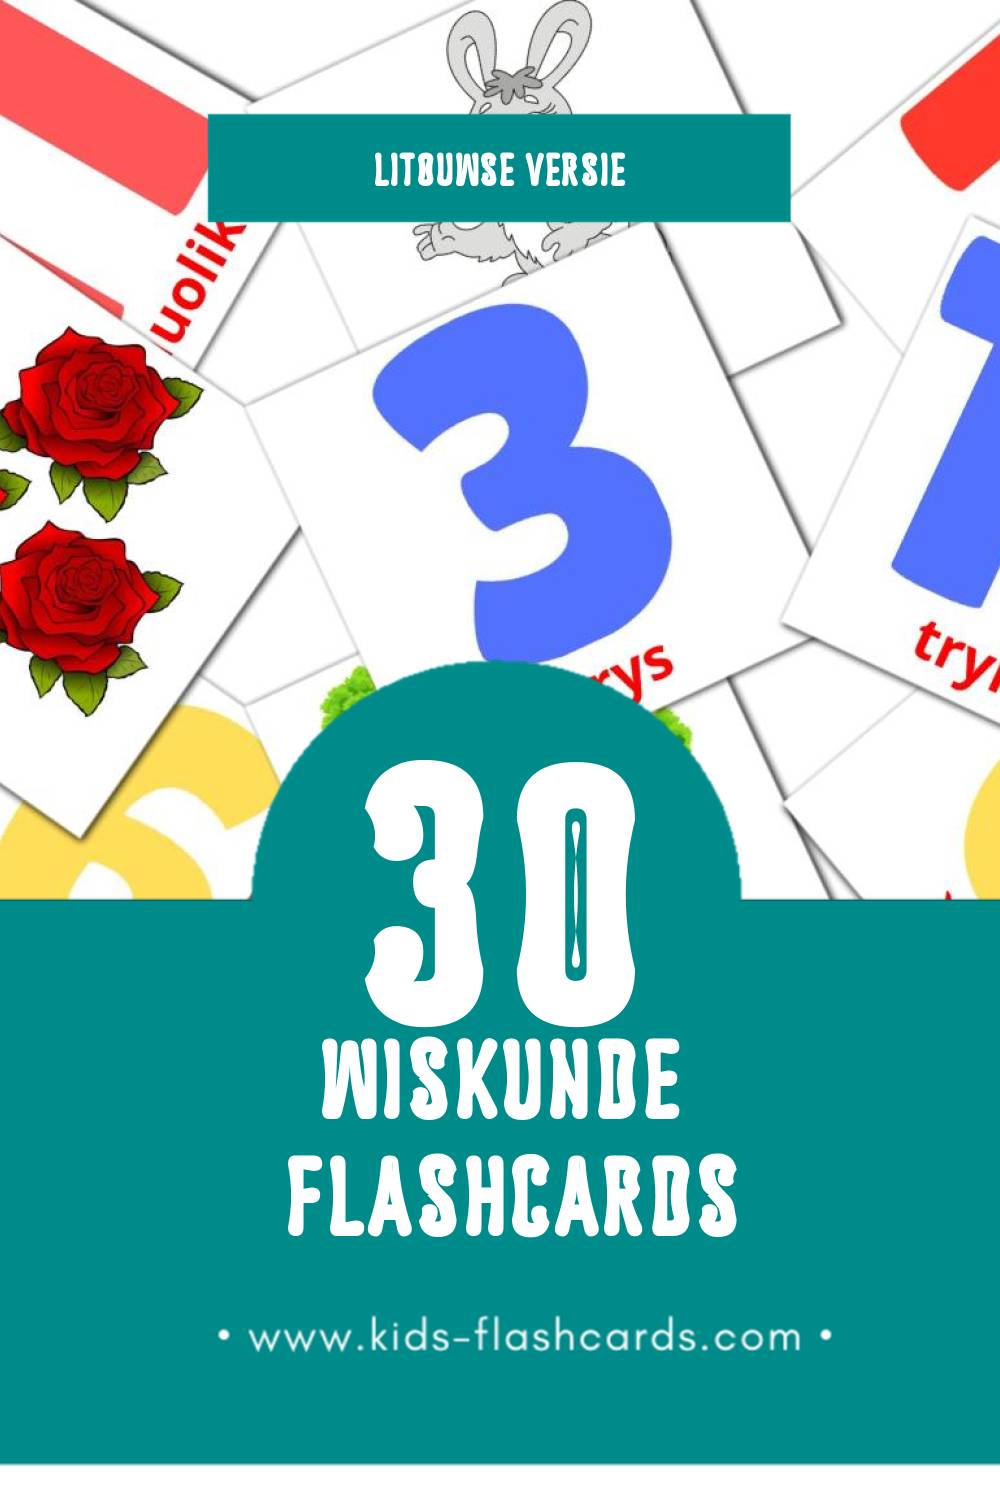 Visuele Matematika  Flashcards voor Kleuters (30 kaarten in het Litouws)